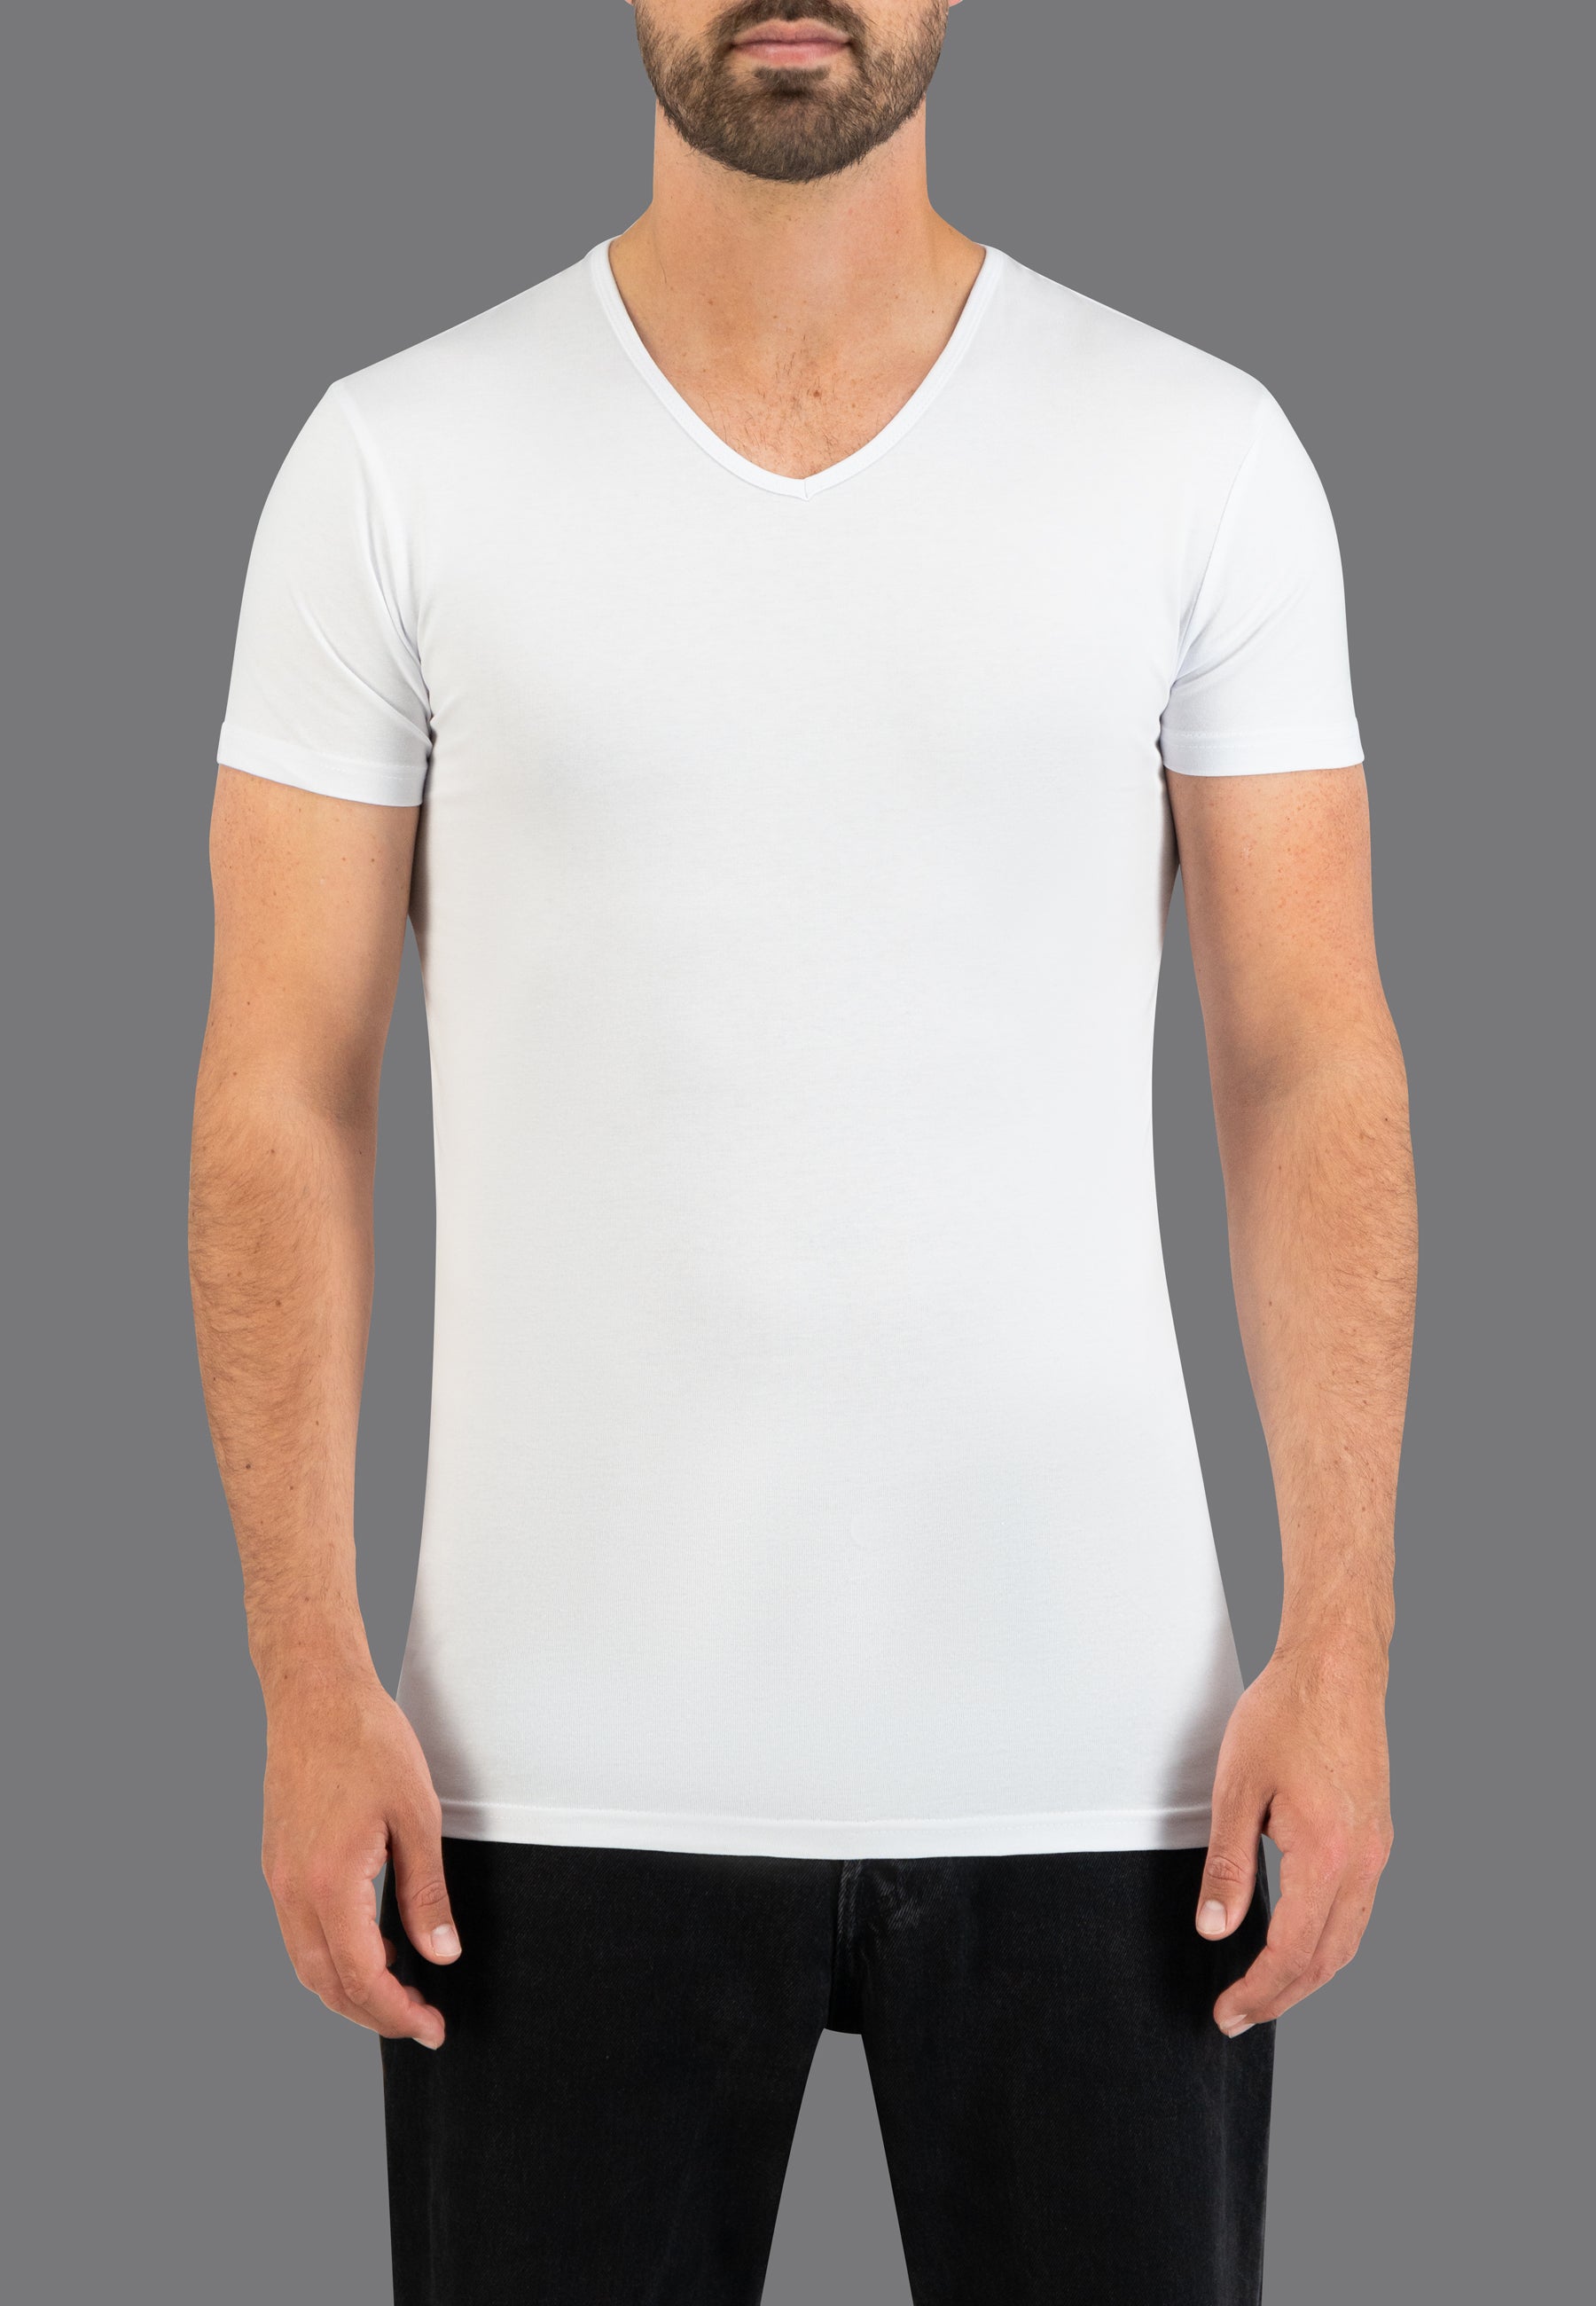 Informeer Nuttig knelpunt V-hals T-shirts voor heren online kopen | Slaterstore - Slaterstore